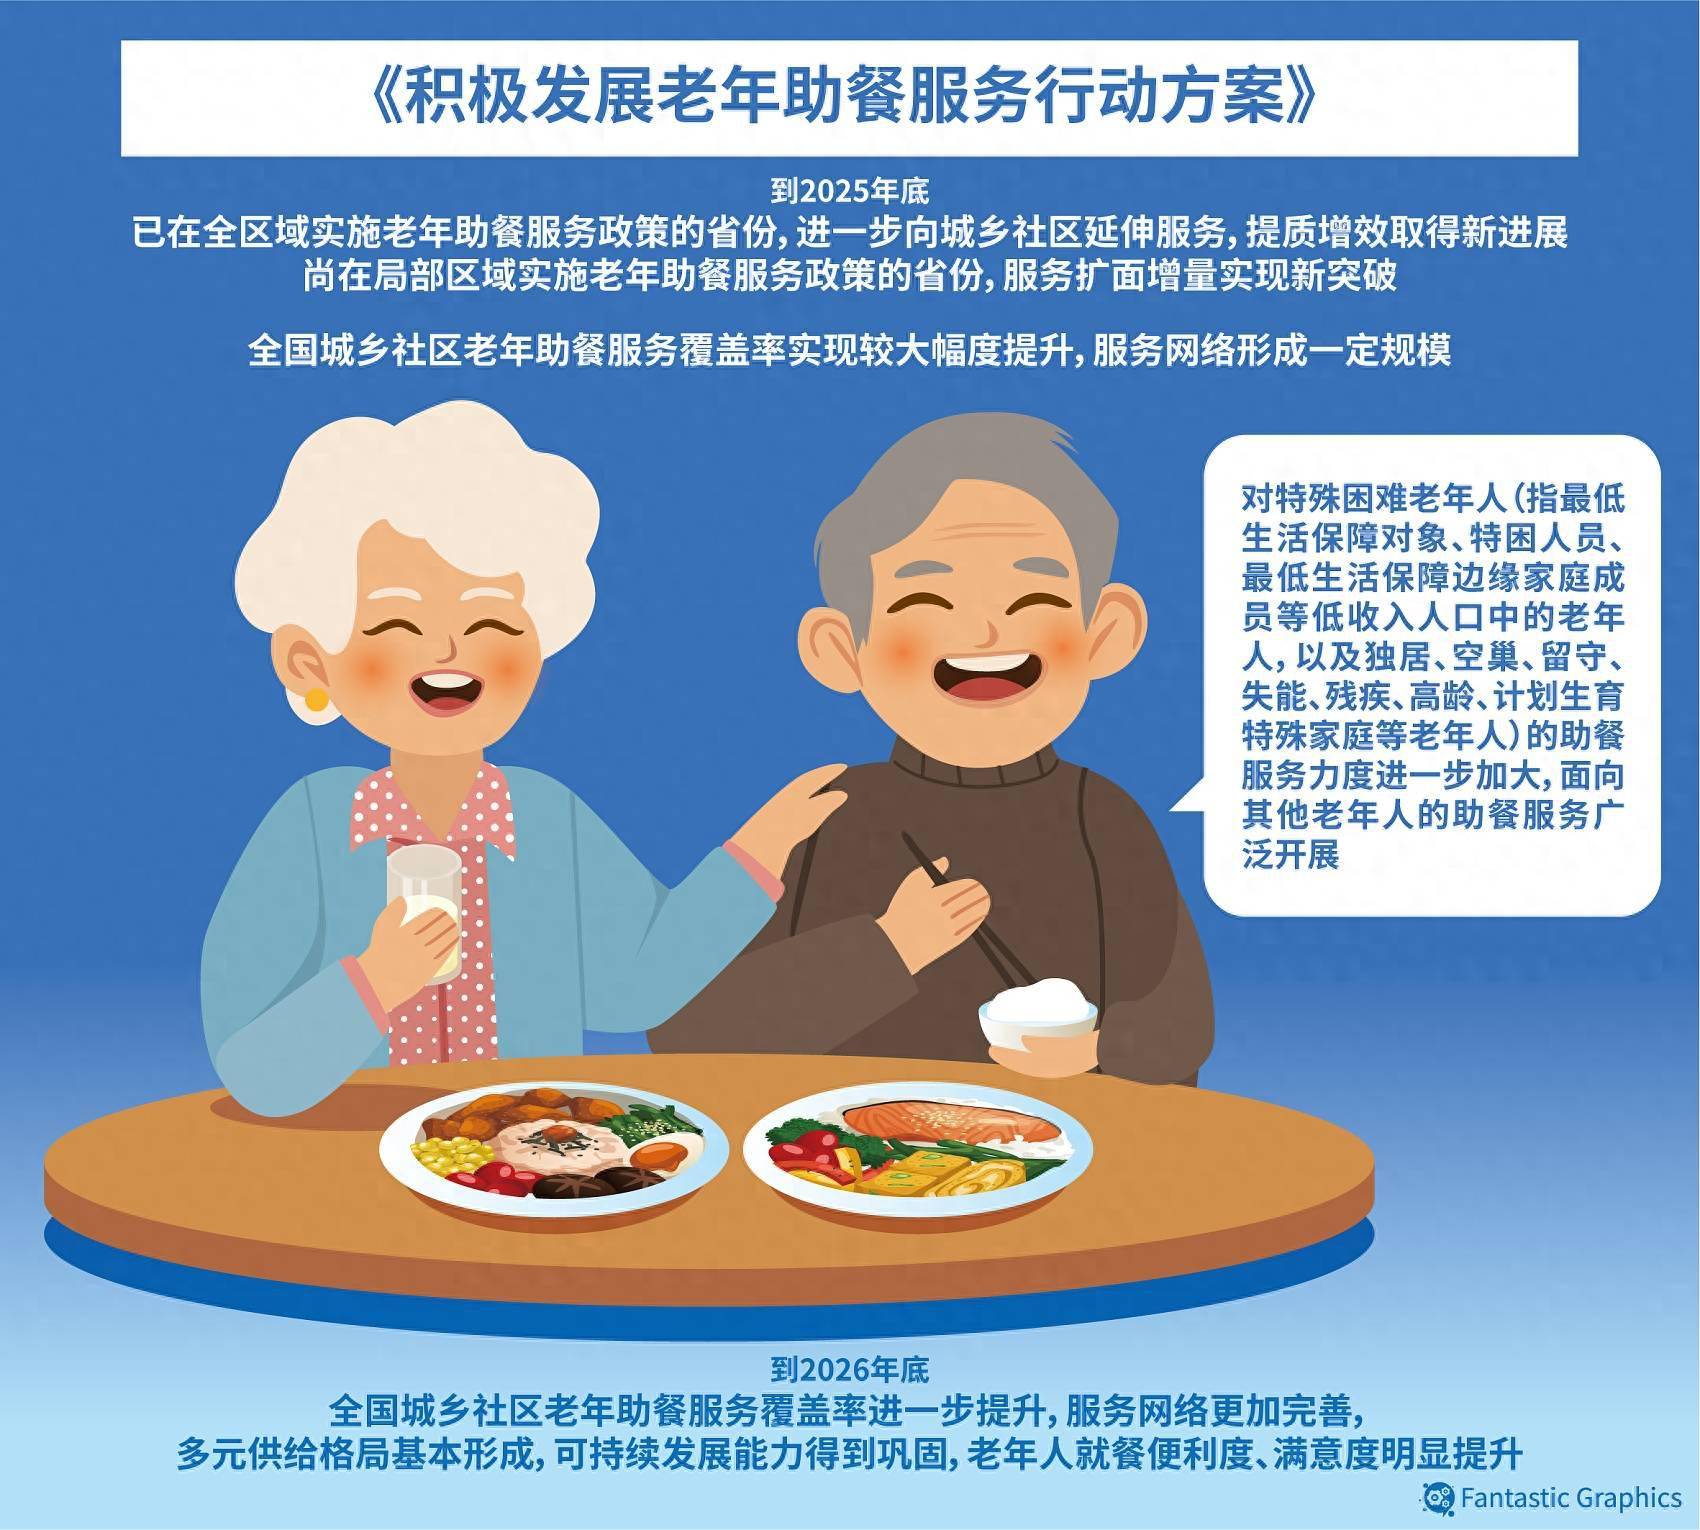 南方网评:暖心助餐,守护老年人的幸福食光